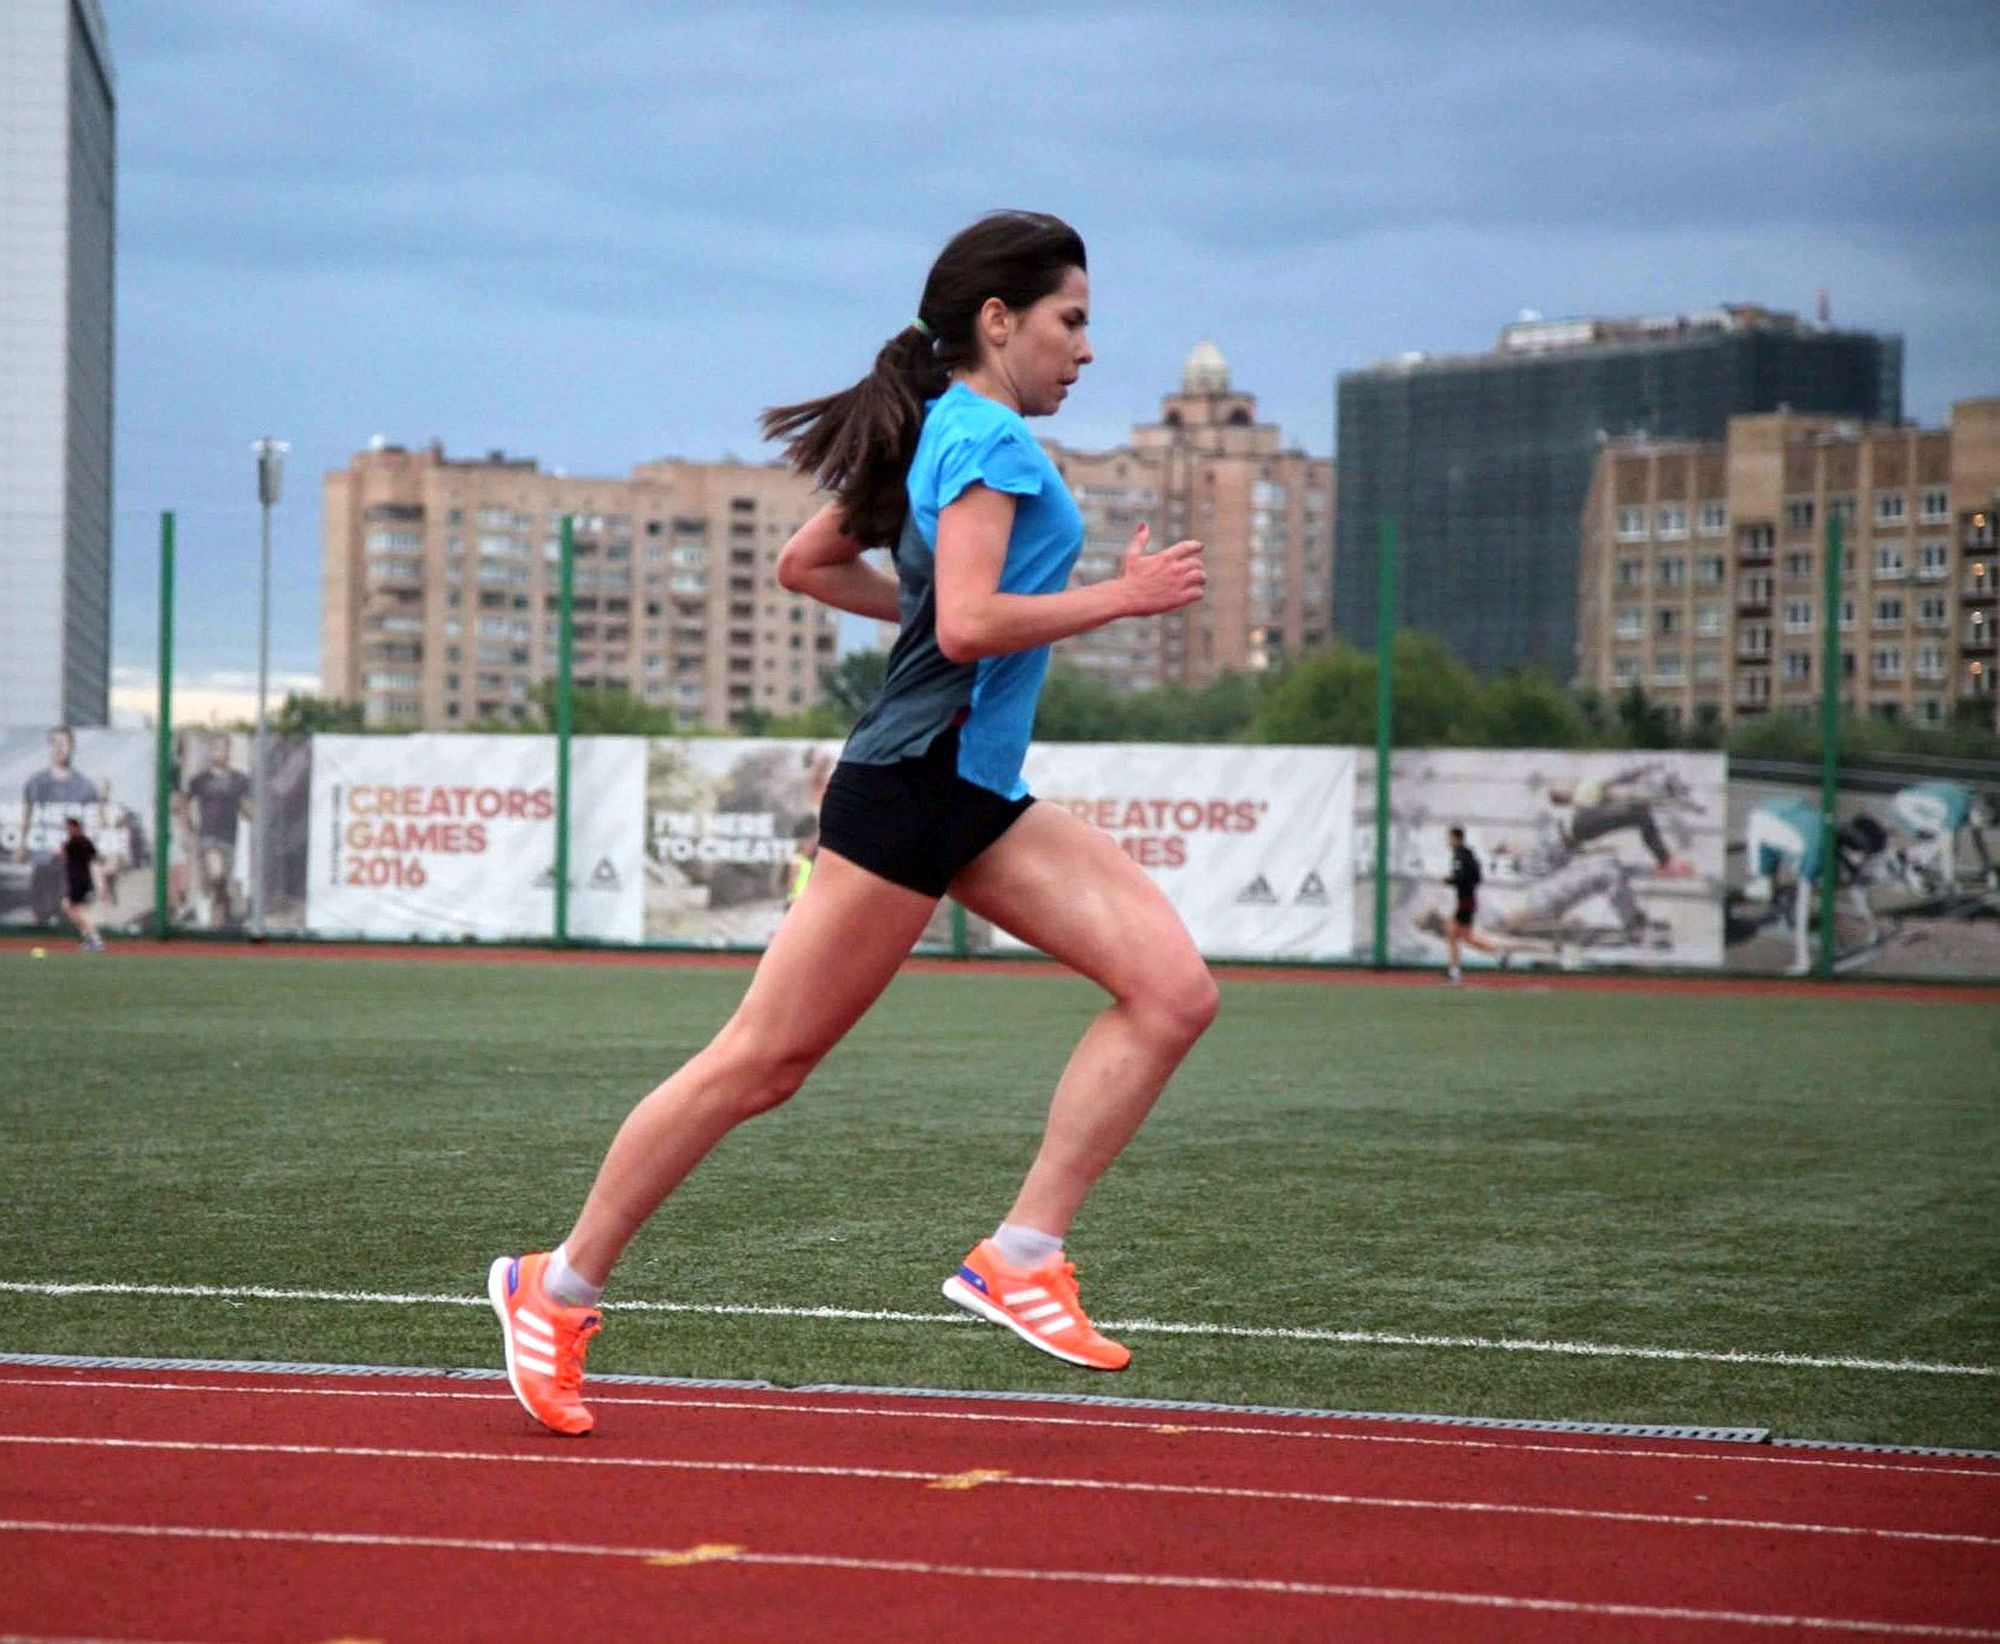 Be fearless and enjoy the run. Интервью с Оксаной Ахмедовой, пробежавшей все 6 мейджоров